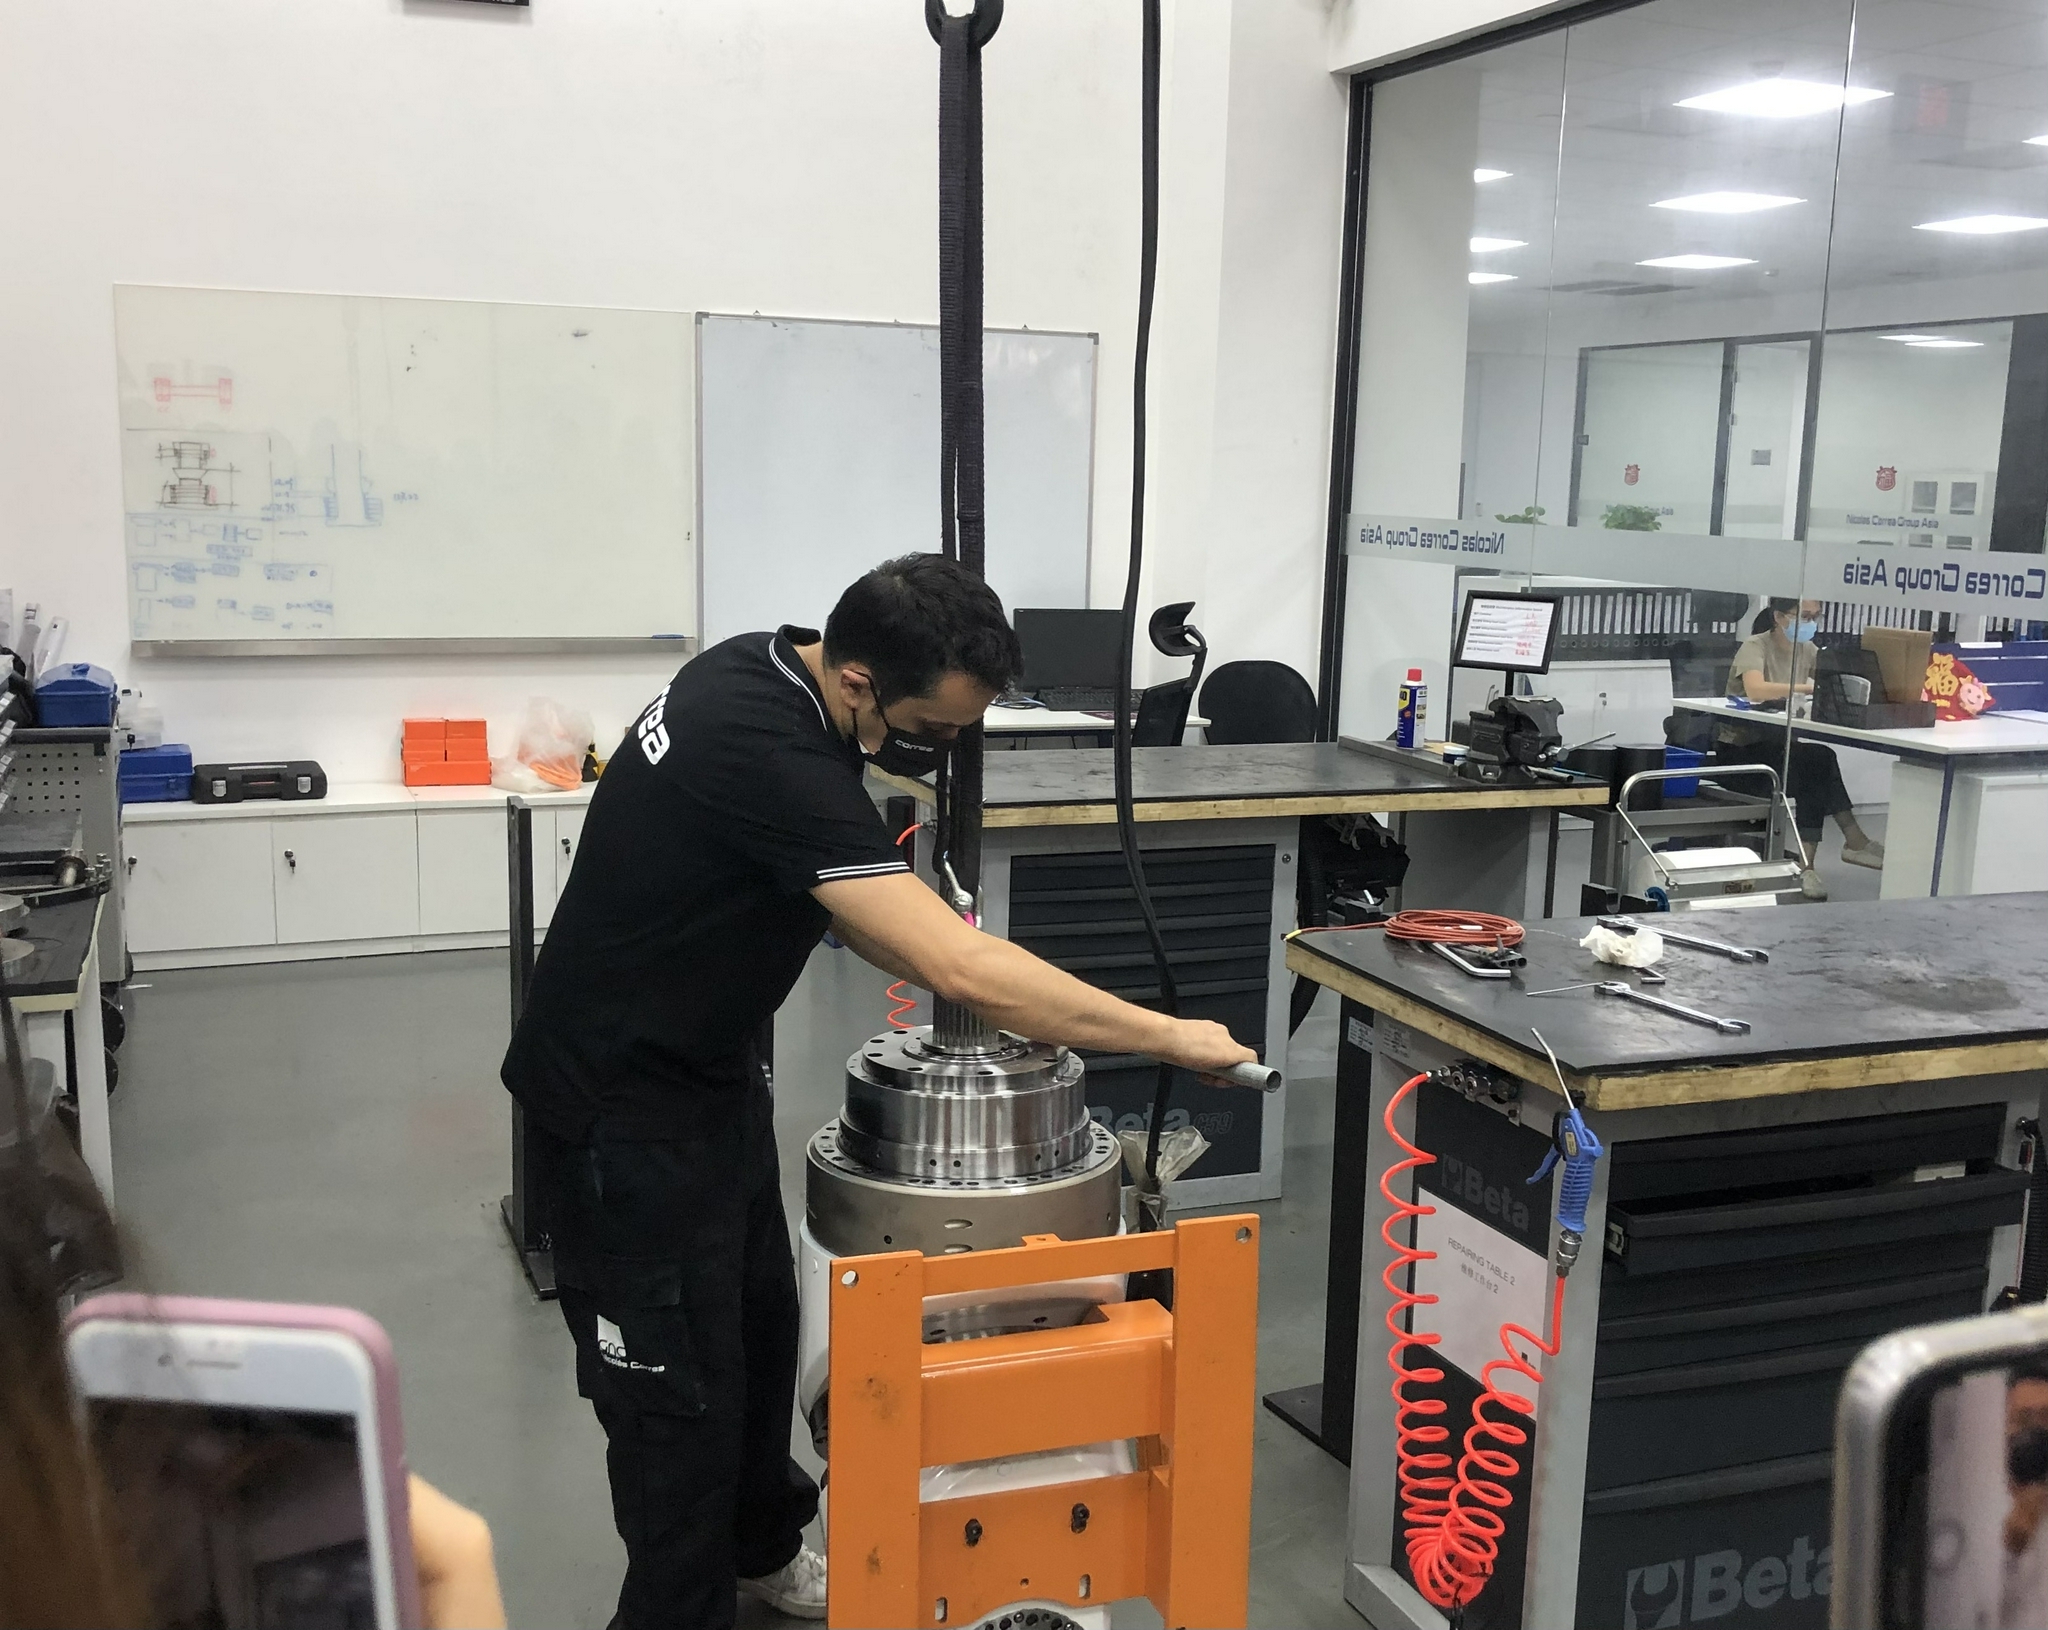 尼古拉斯·克雷亚集团（亚洲）公司一名工程师在调整装备。